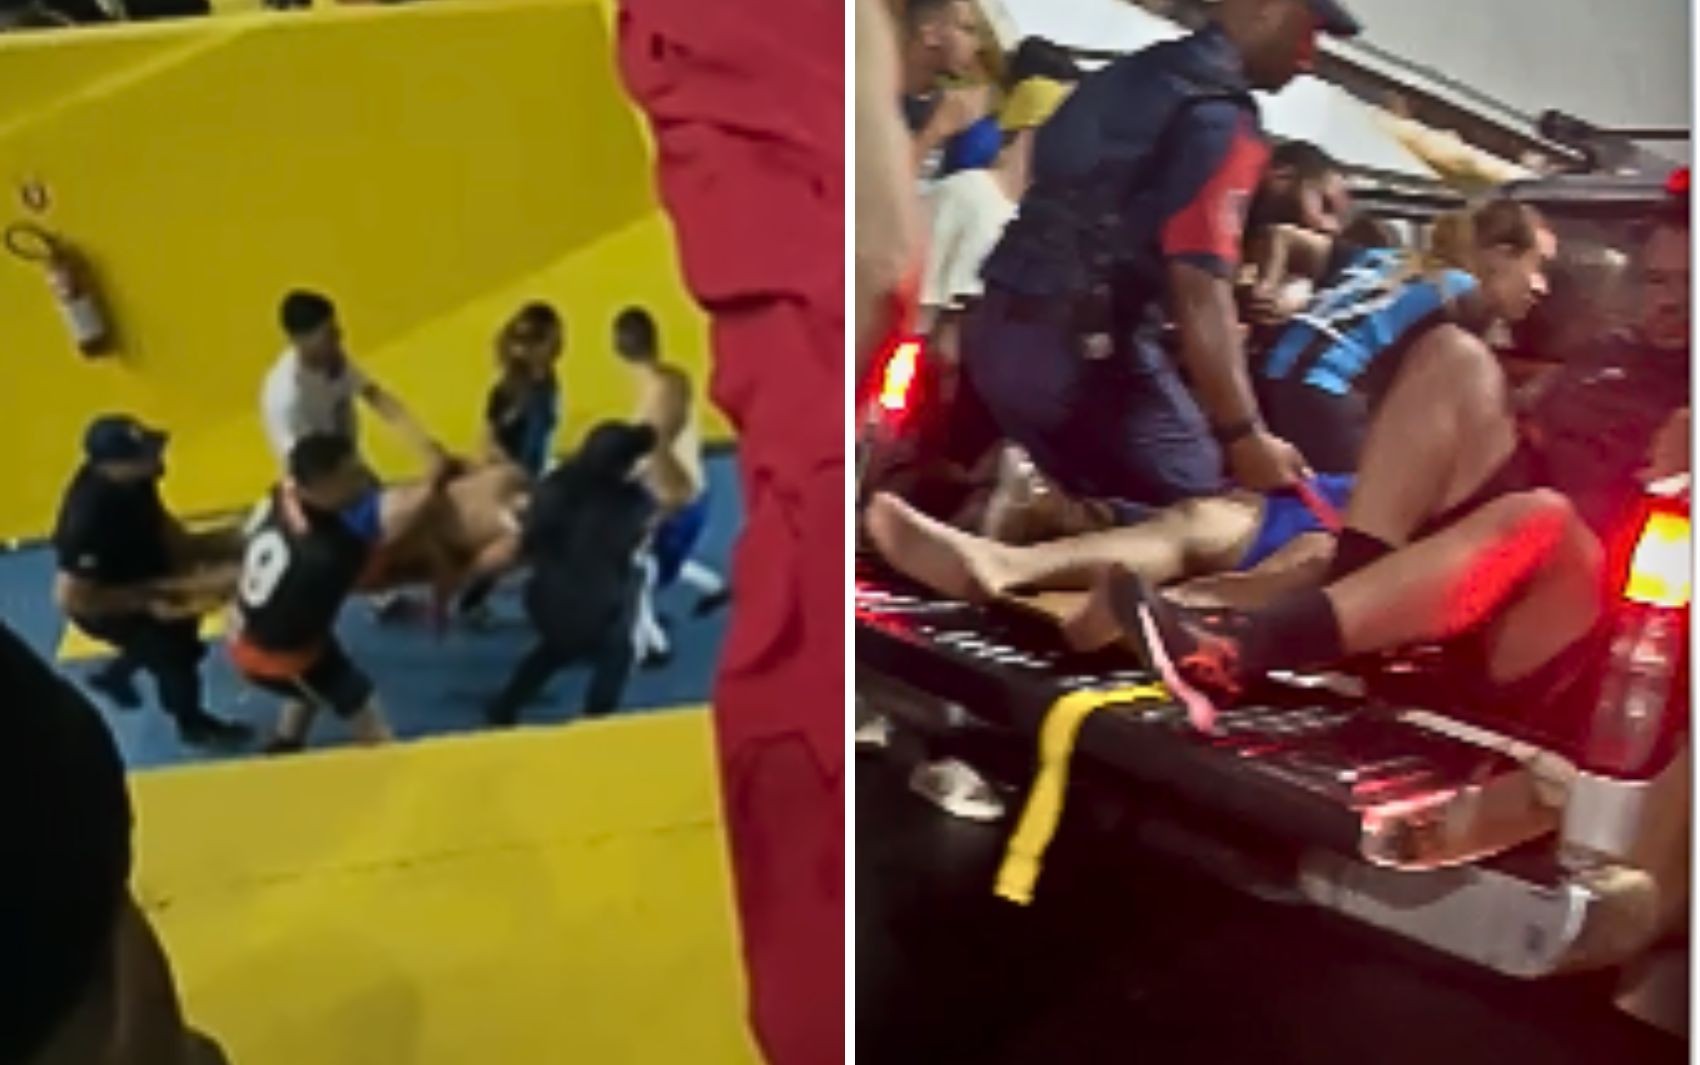 Atleta é levado a hospital de caminhonete após passar mal durante jogo de futsal, dizem colegas; vídeo